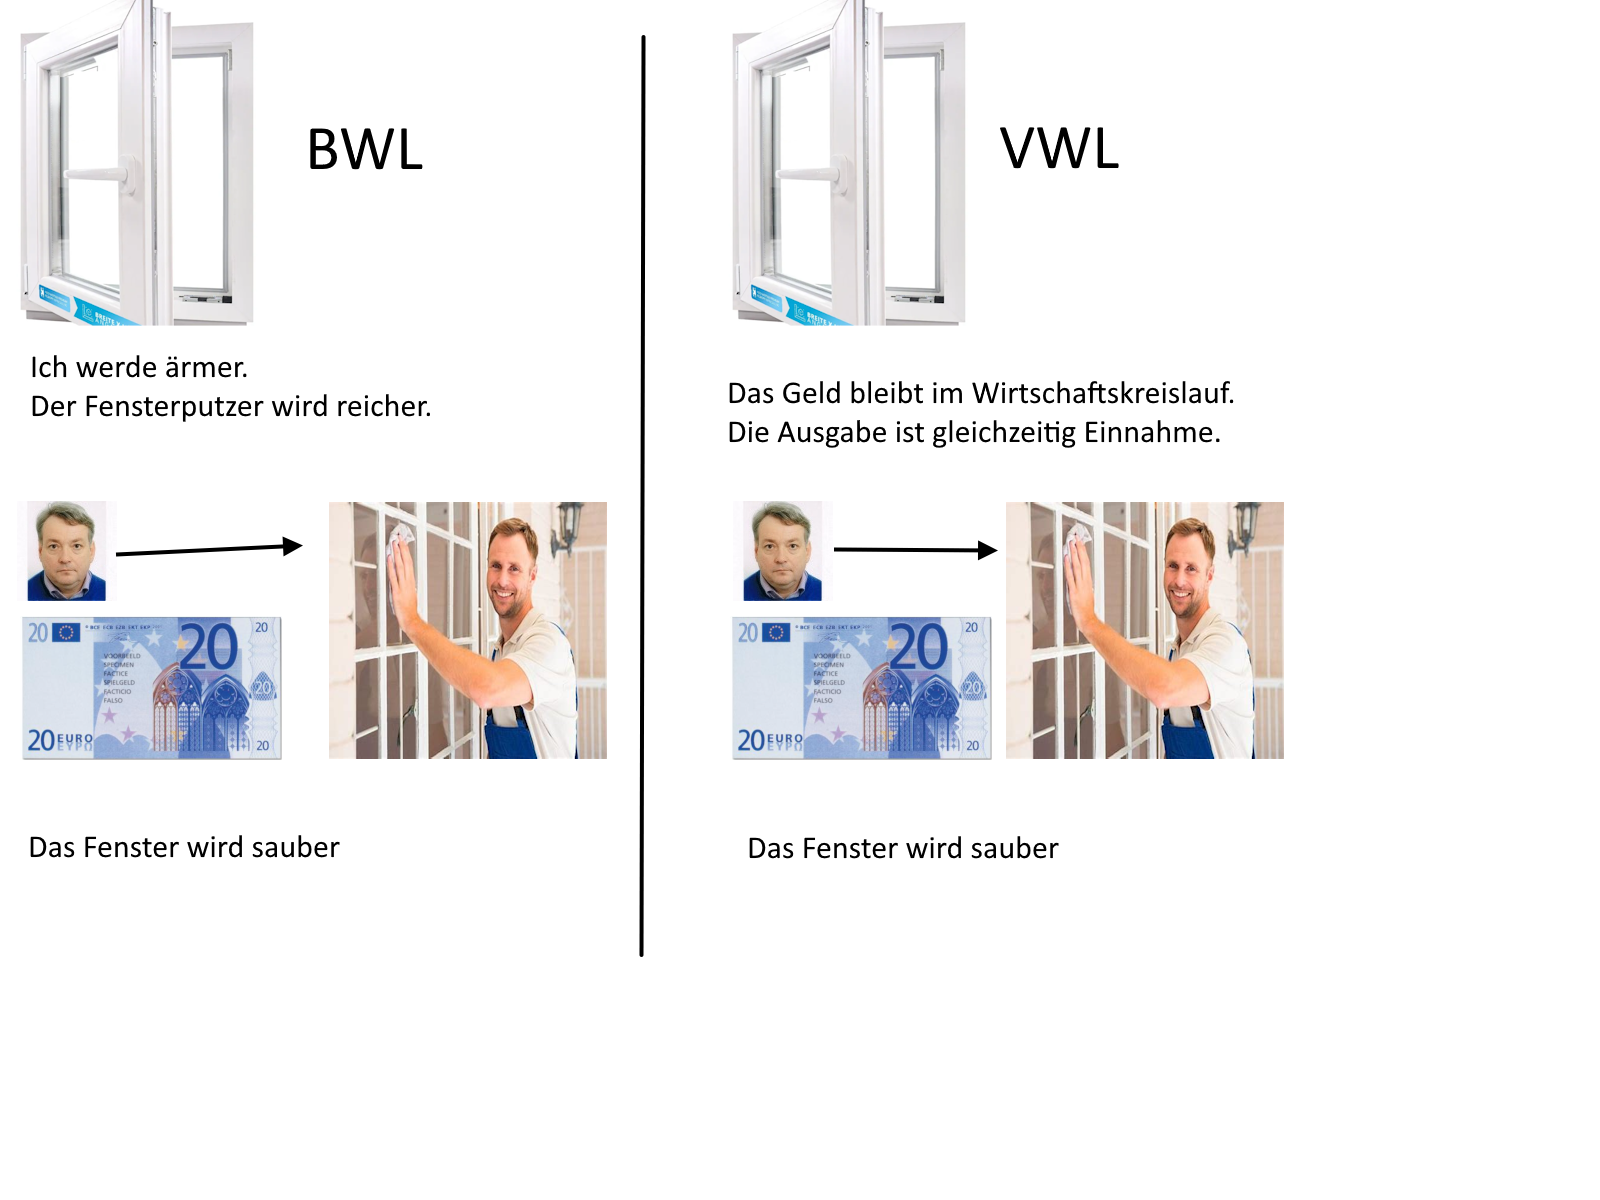 Dss Bild zeigt den Unterschied zwischen
  BWL und VWL dar. Es zeigt beides mal wie Ich einem Fensterputzer 20 Euro geben. Aus der BWL Sicht werde Ich ärmer und der Fensterputzer reicher. Aus VWL Sicht bleibt das Geld im Wirtschaftskreislauf.Entscheident ist dass in beiden Versionen das Fenster sauber wird.